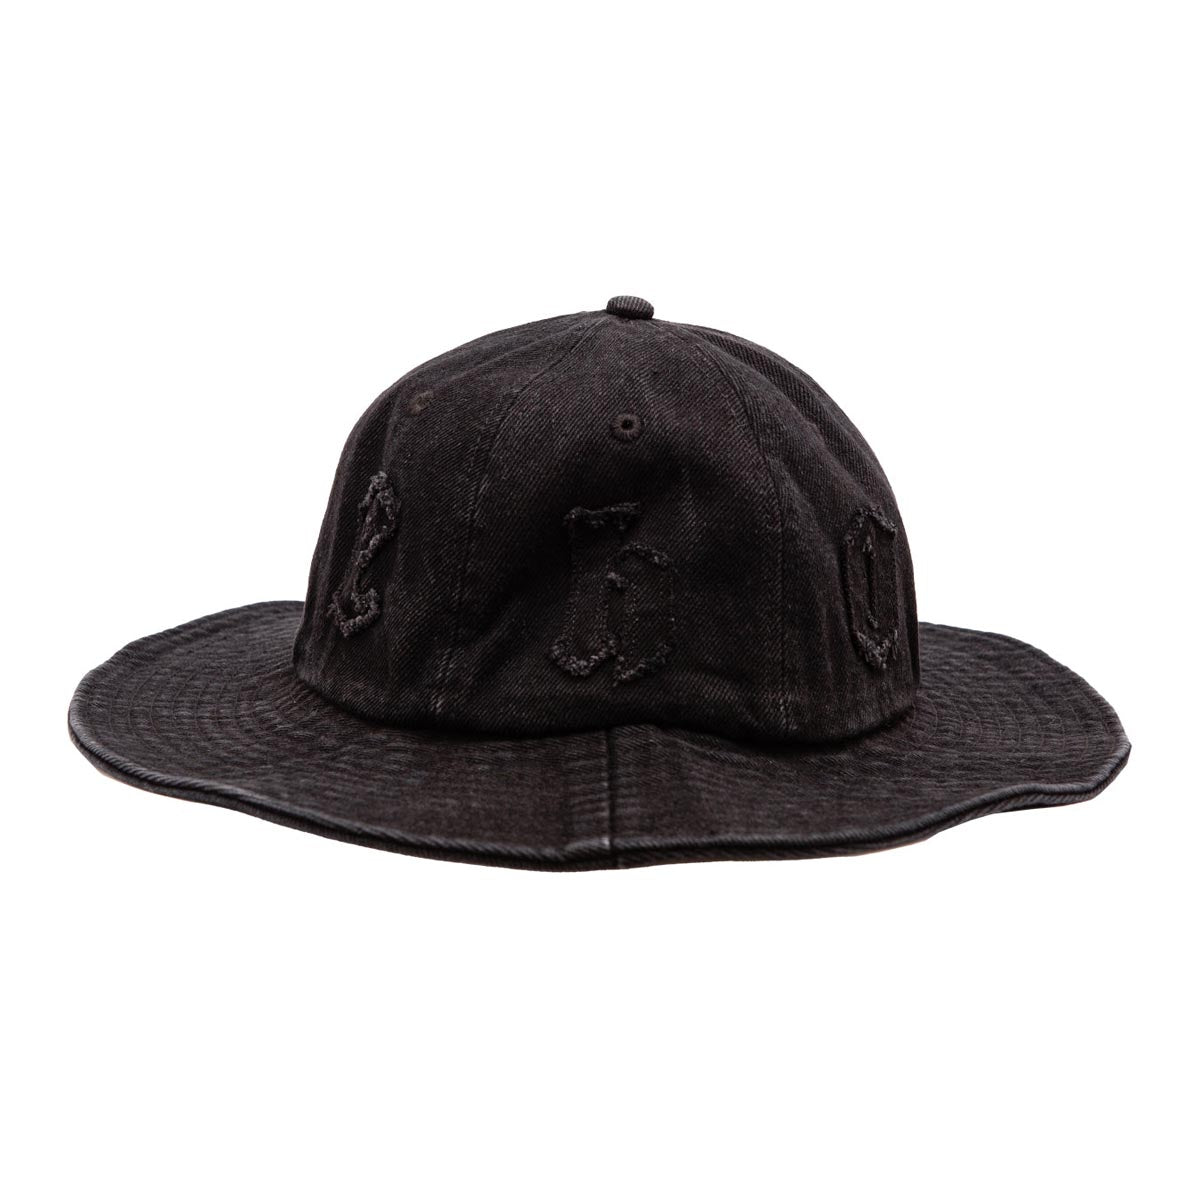 Hoddle Bucket Hat - Black Wash image 1